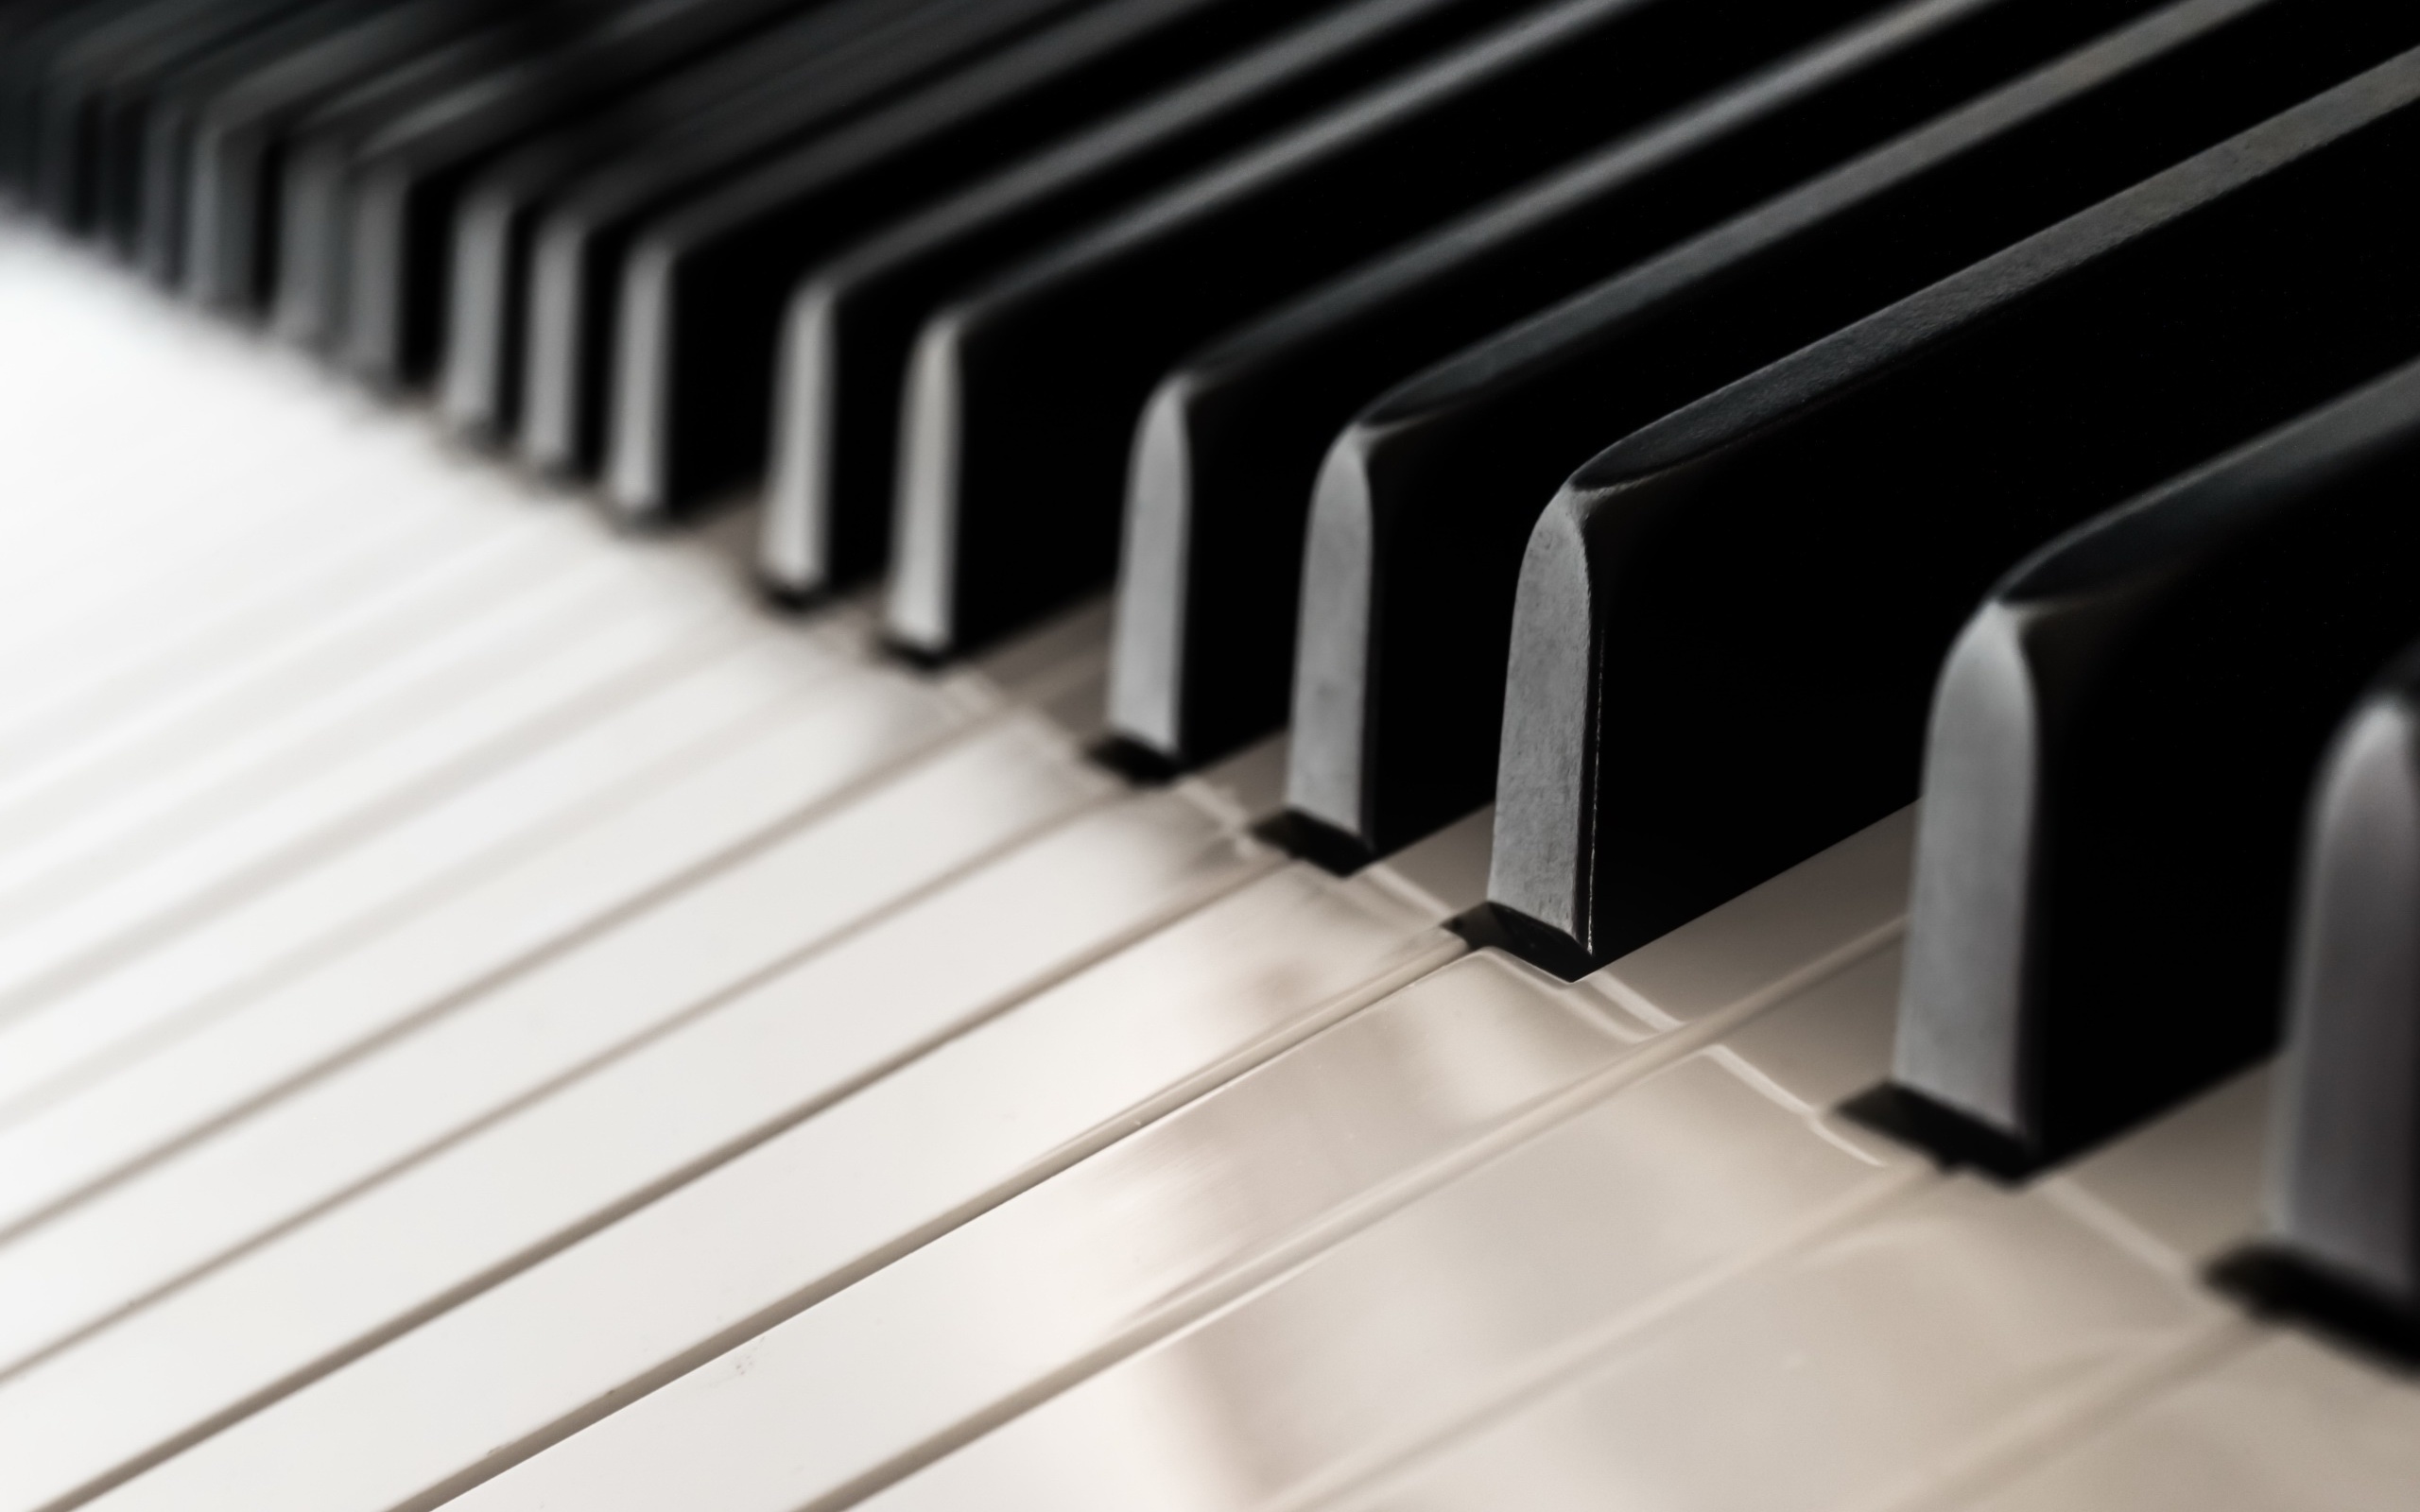 Piano closeup photo